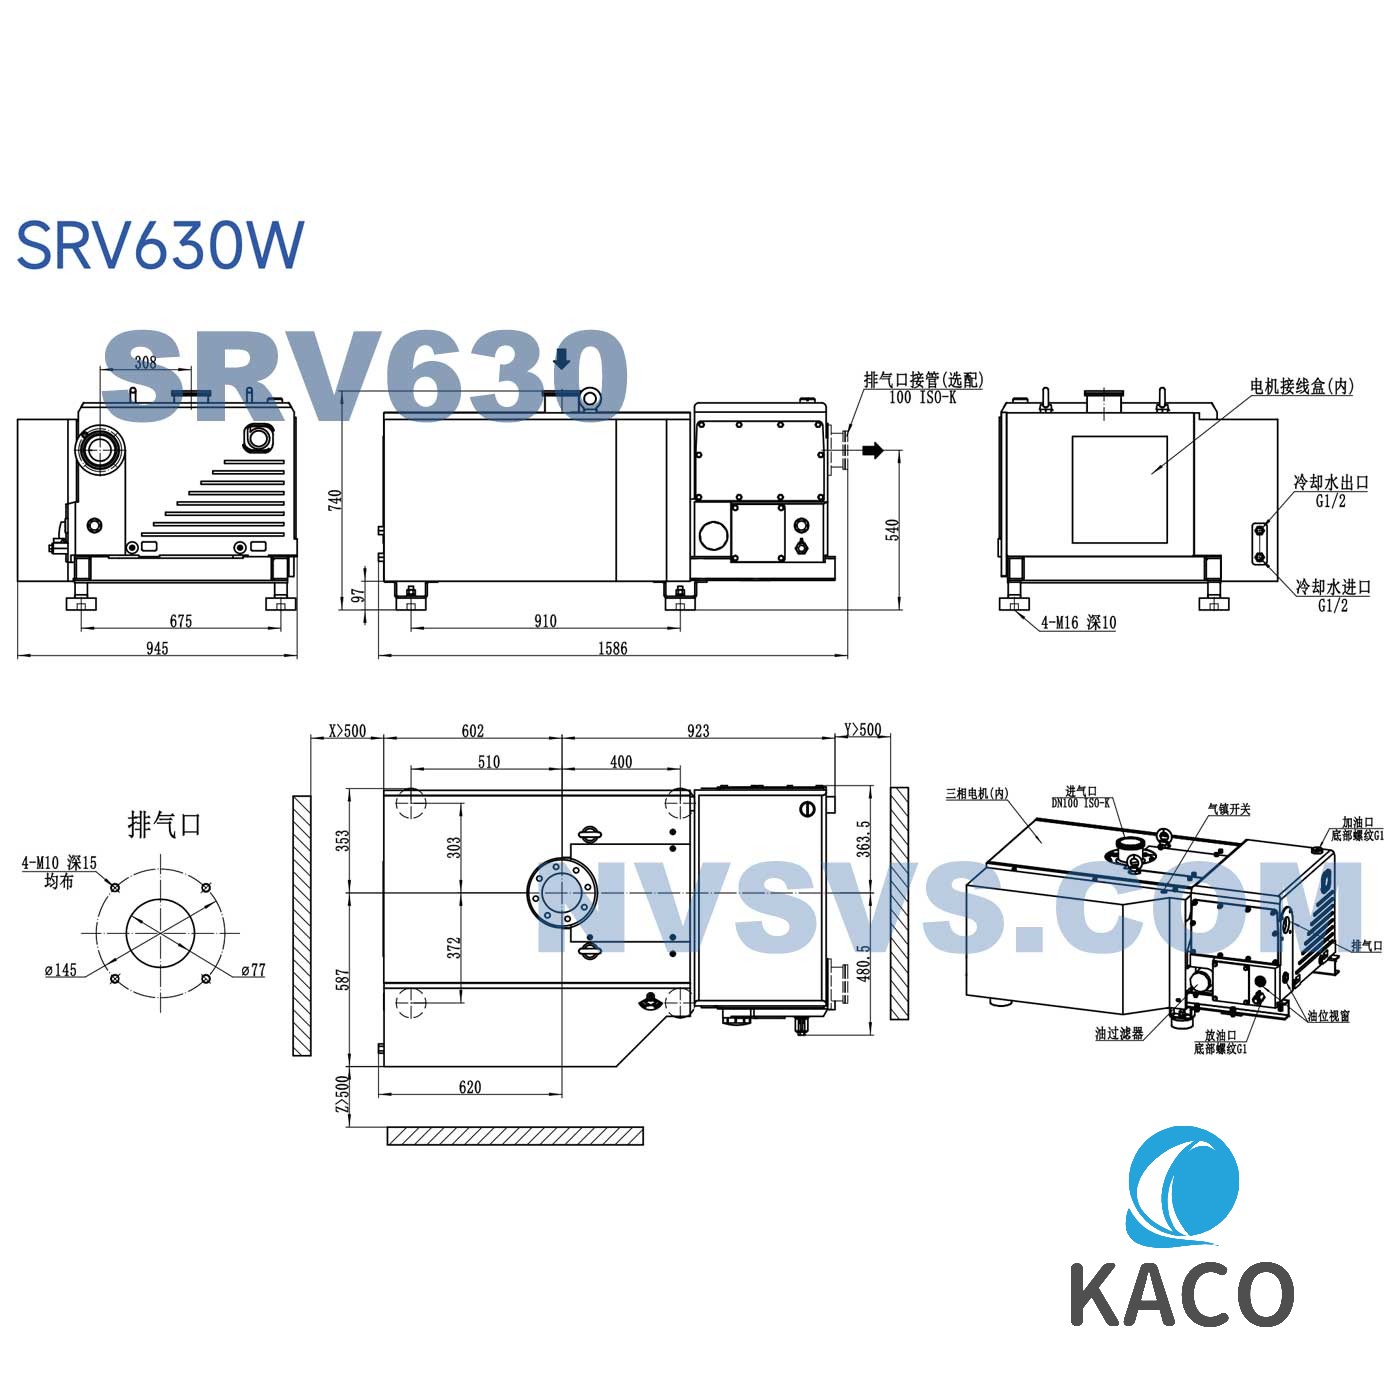 鲍斯真空泵SRV630W水冷单级油旋片泵图纸尺寸